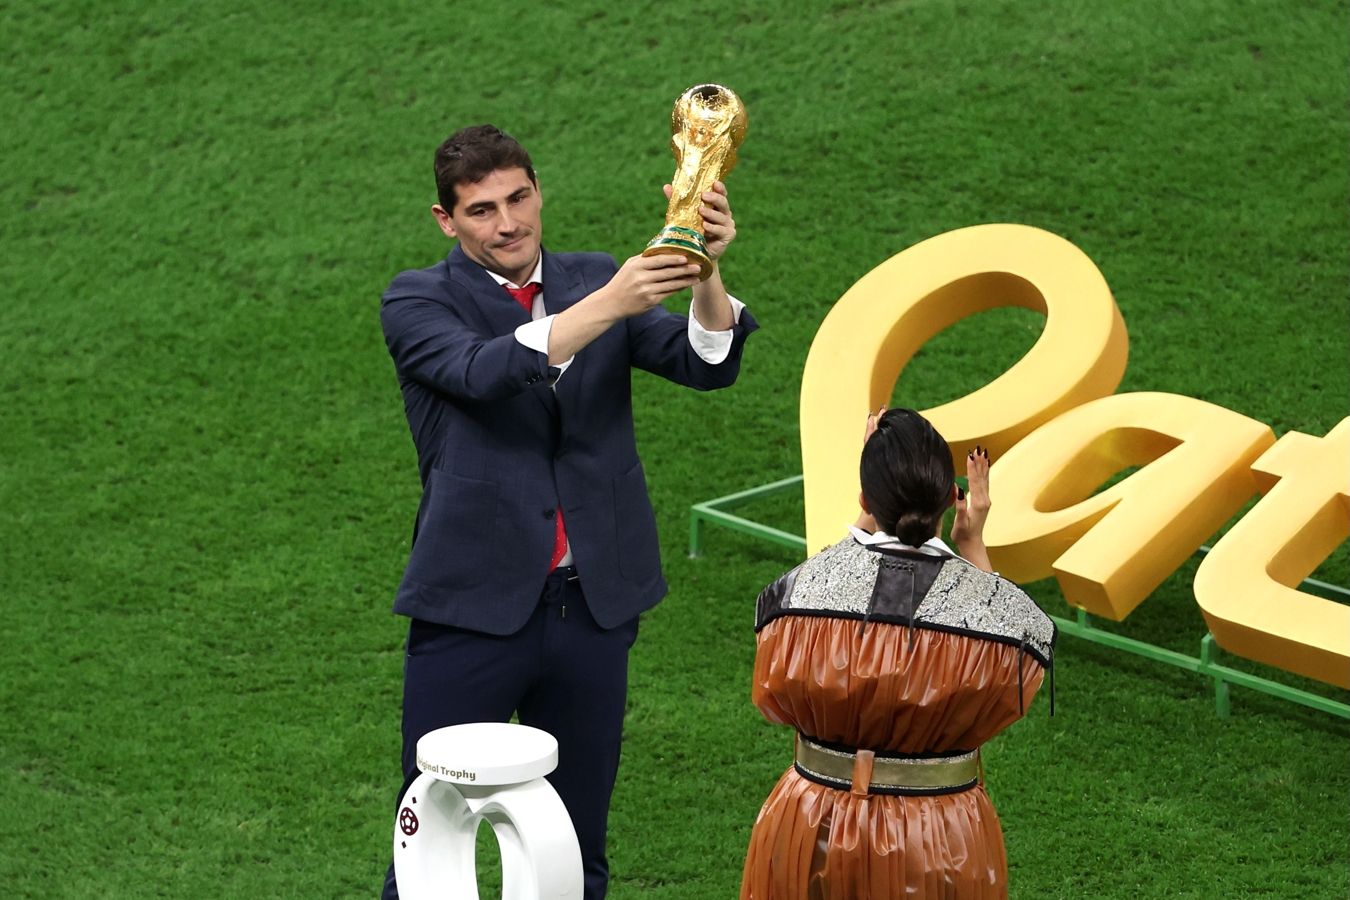 Касильяс вынес Кубок мира и показал его трибунам перед финалом чемпионата мира в Катаре